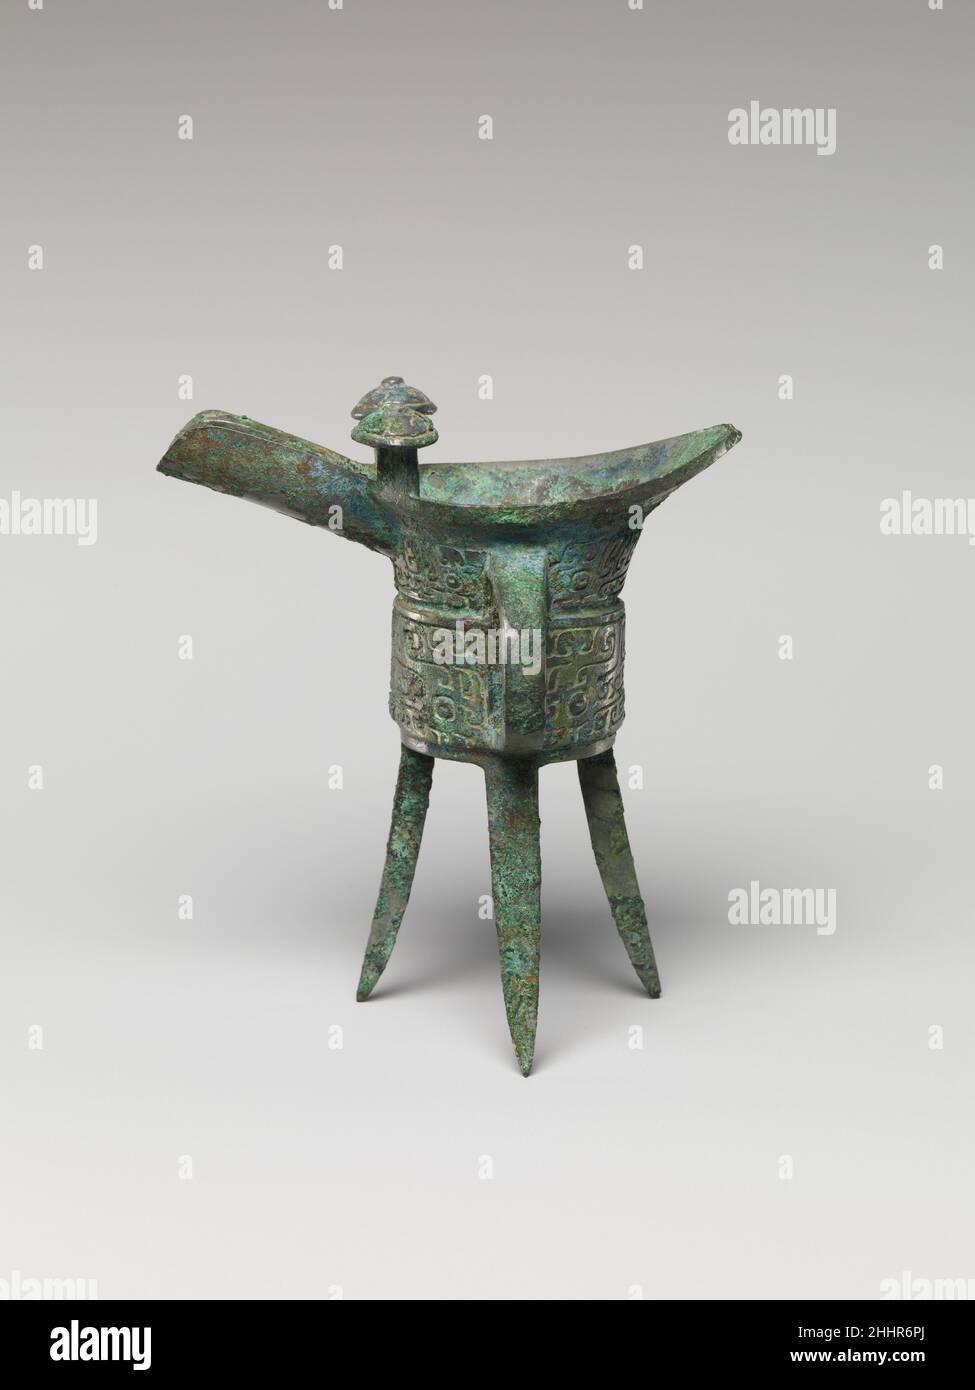 Miniatur-Weingefäß (Jue) Ende des 14th. Jahrhunderts v. Chr. China. Miniatur-Weingefäß (Jue) 49386 Stockfoto